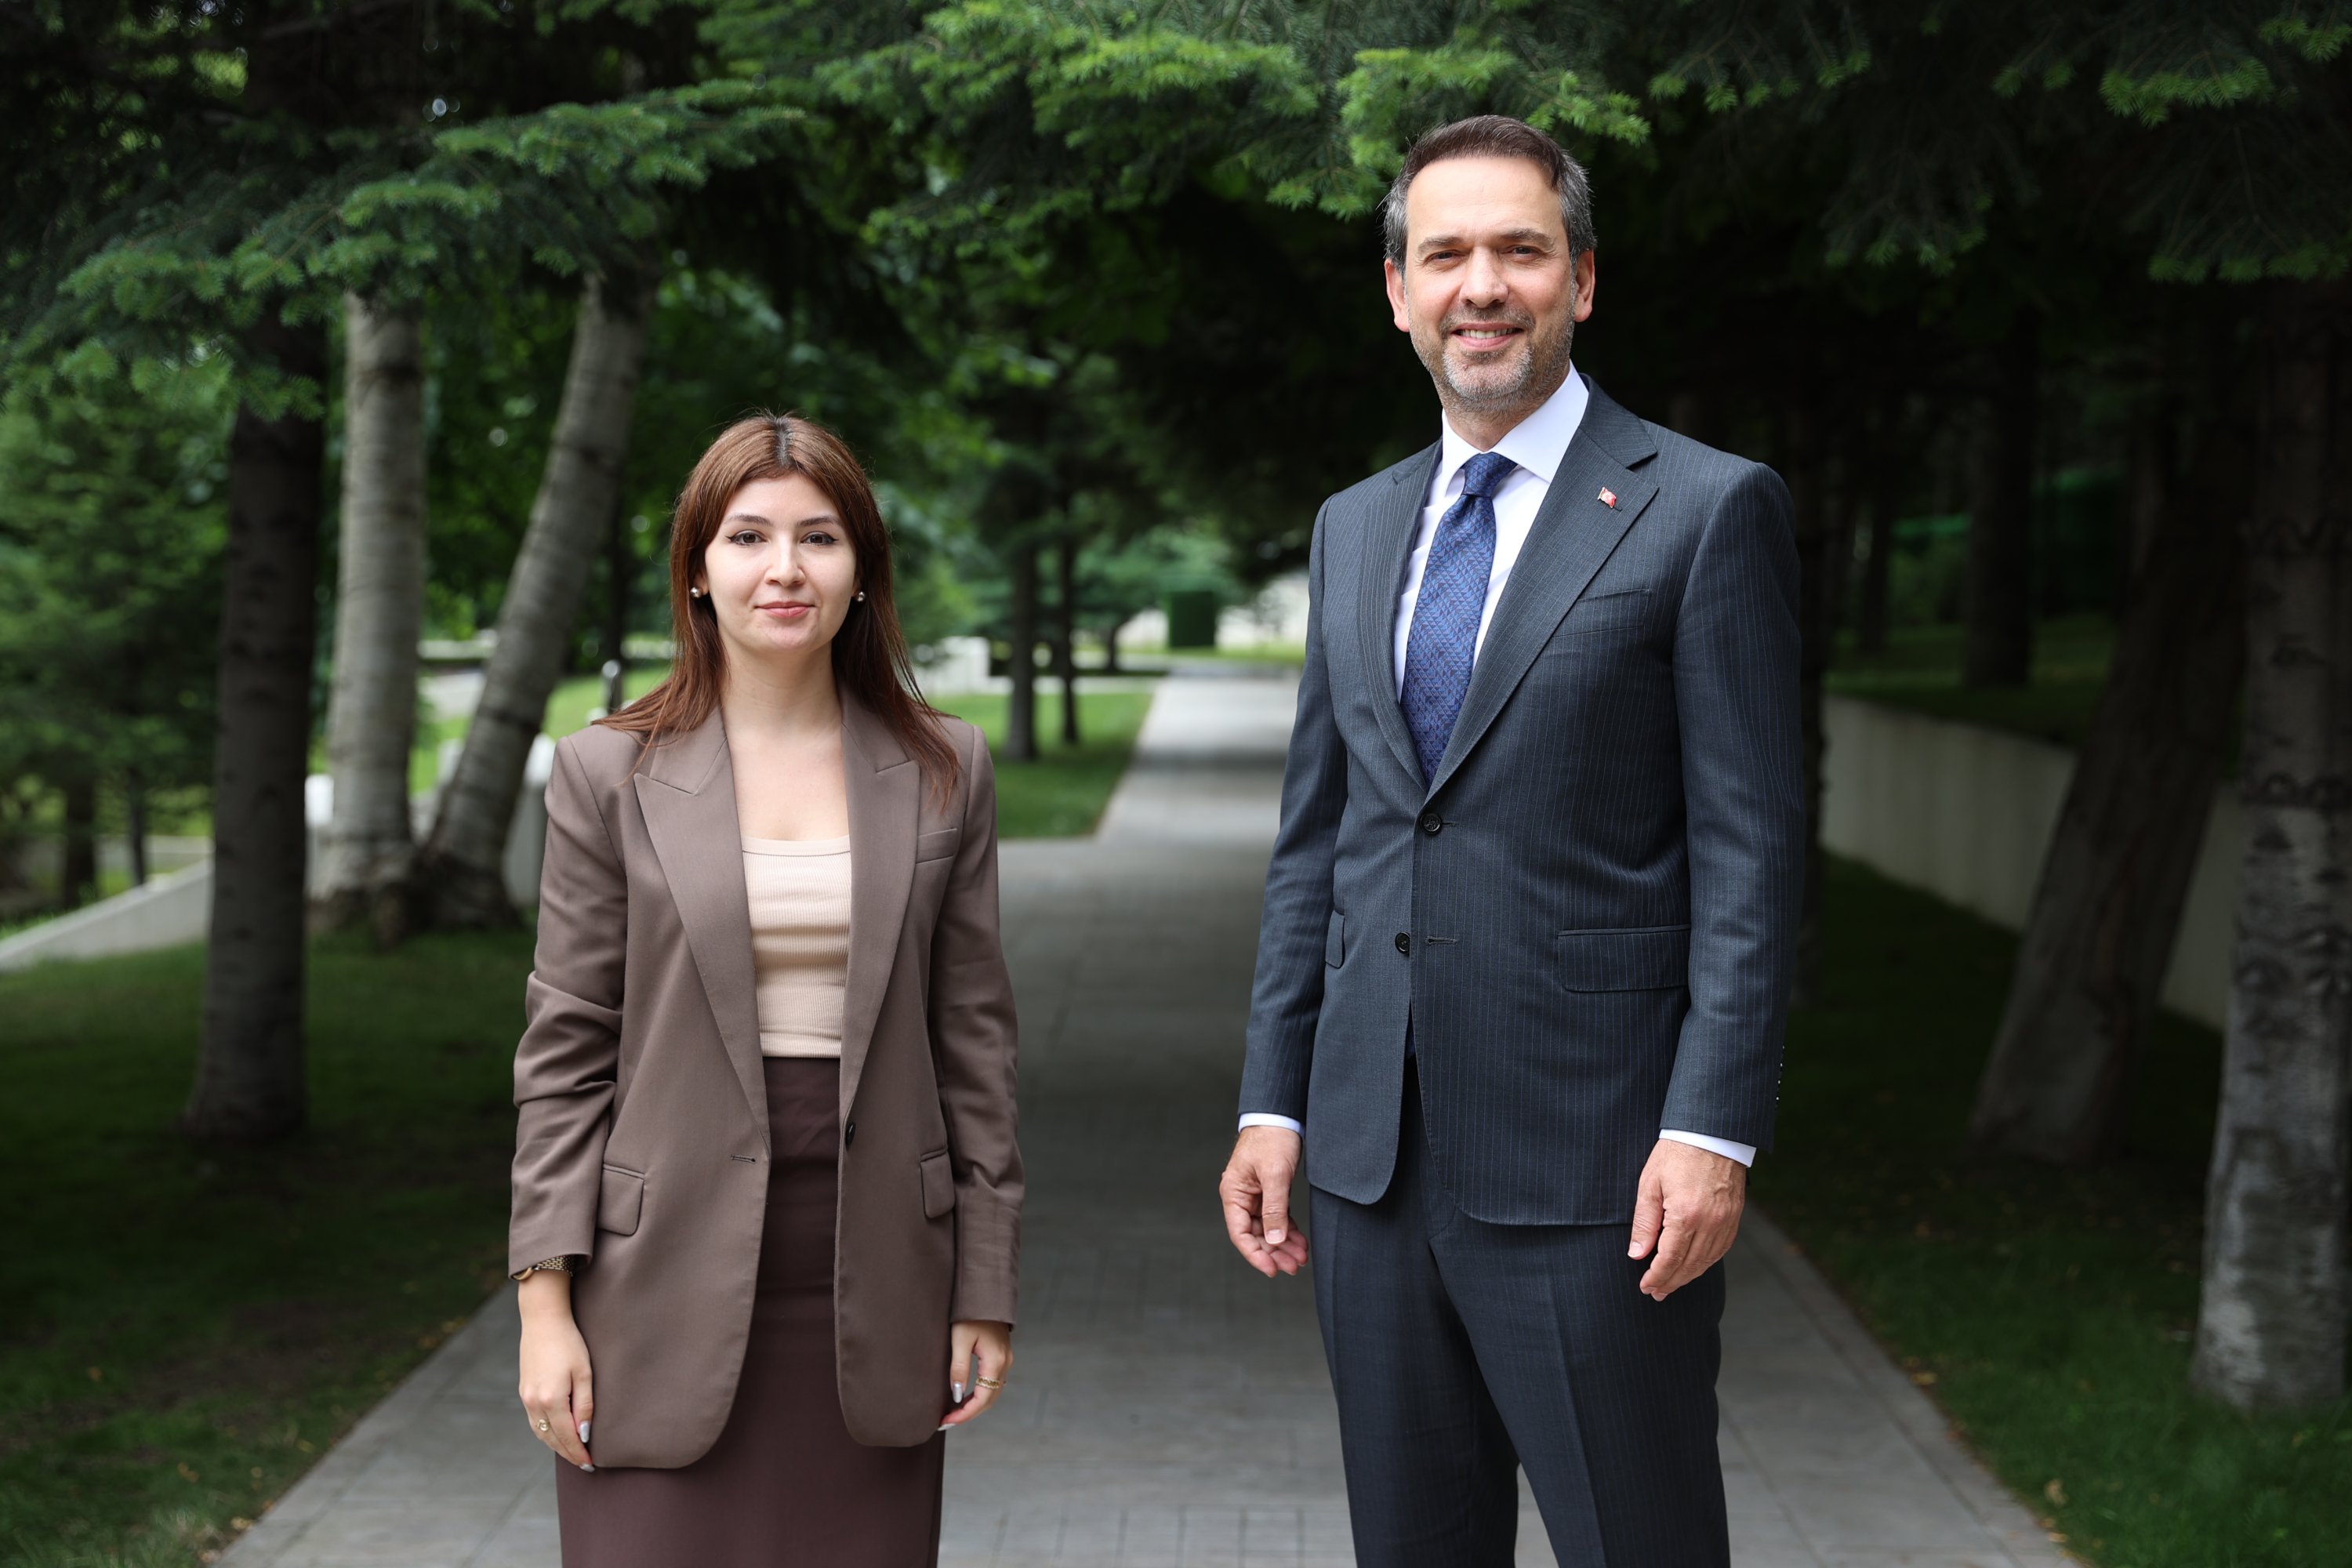 Menteri Energi dan Sumber Daya Alam Alparslan Bayraktar terlihat bersama Dilara Aslan Özer dari Harian Sabah di ibu kota Ankara, Türkiye, 7 Juli 2023 (Atas izin kementerian)